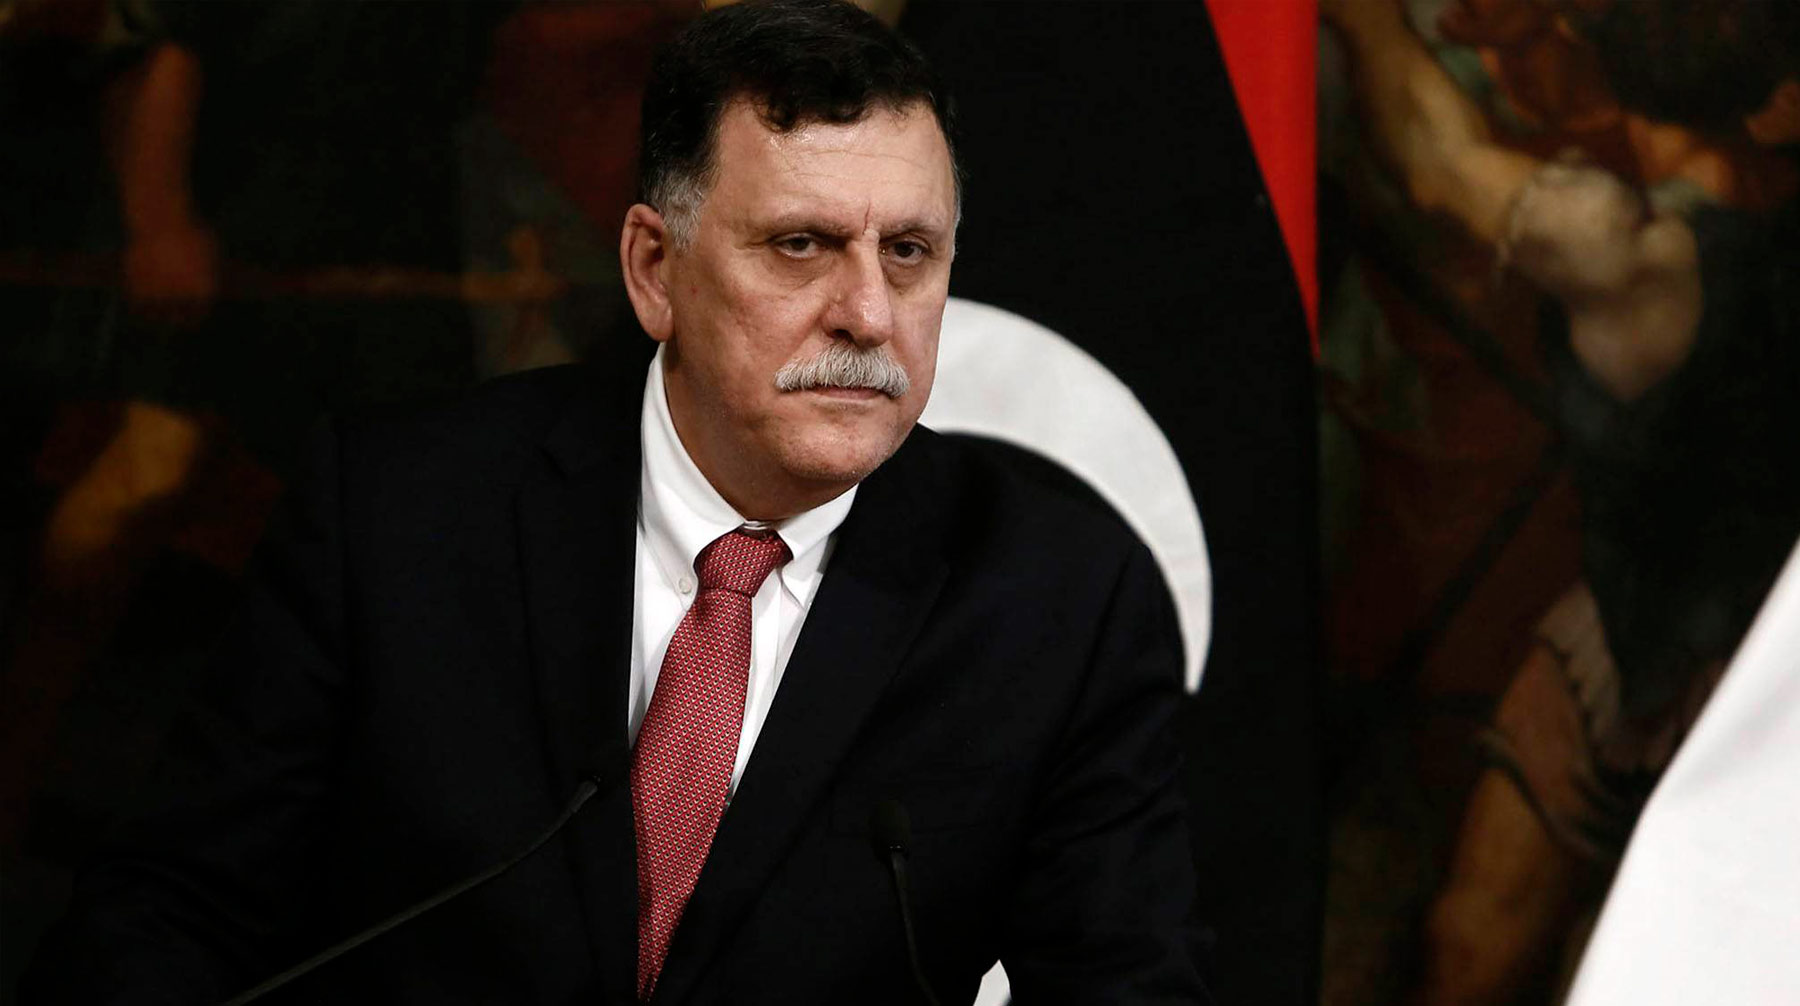 Нападавших было порядка 30 человек, сообщили в охране дипмиссии Премьер-министр Правительства национального согласия (ПНС) Ливии Фаиз Сарадж